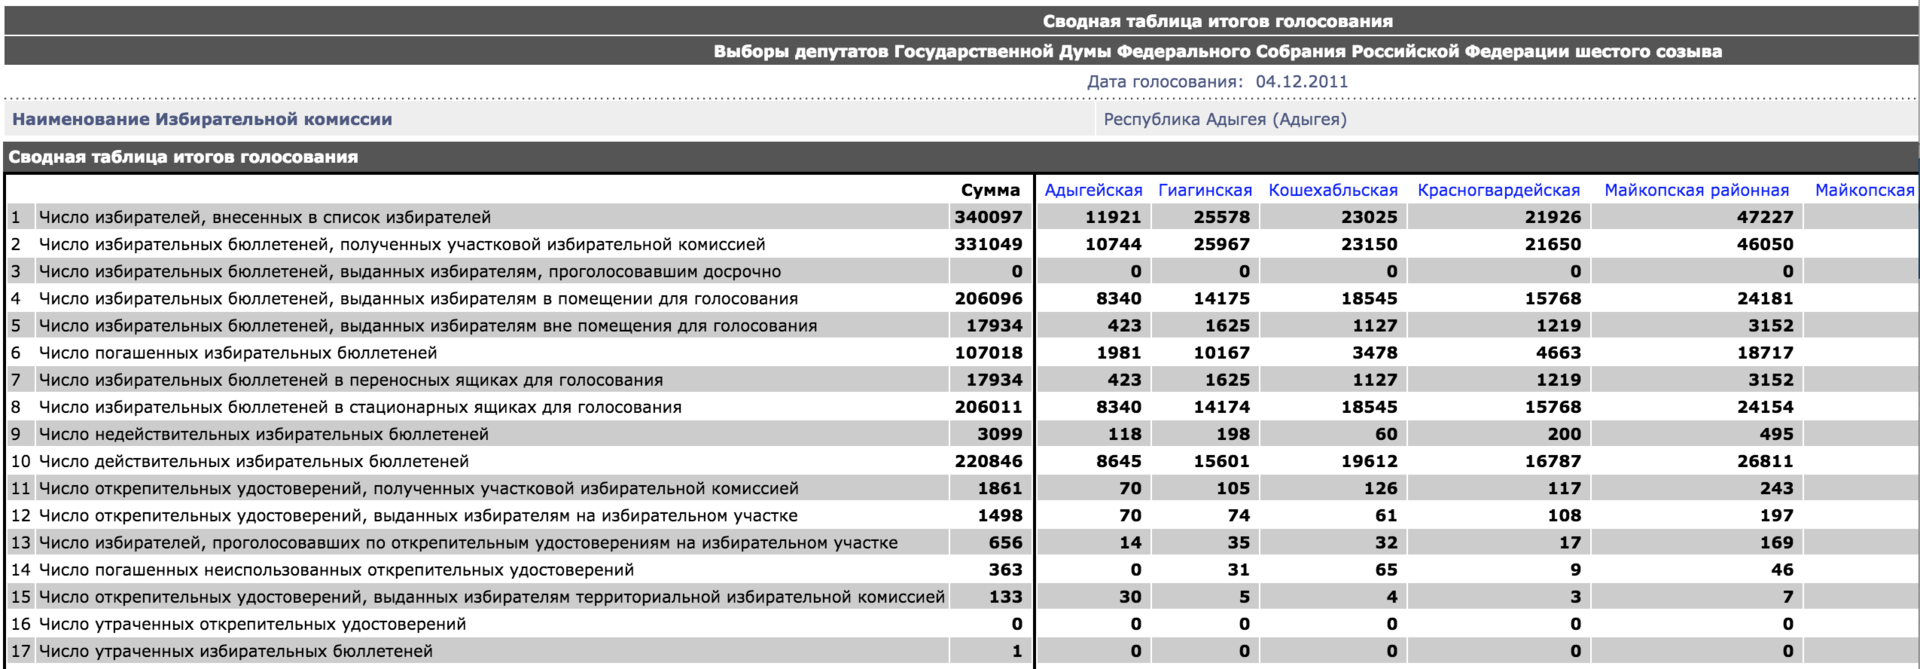 Анализ результатов выборов в Госдуму. Готовимся к голосованию 2016 года - 3